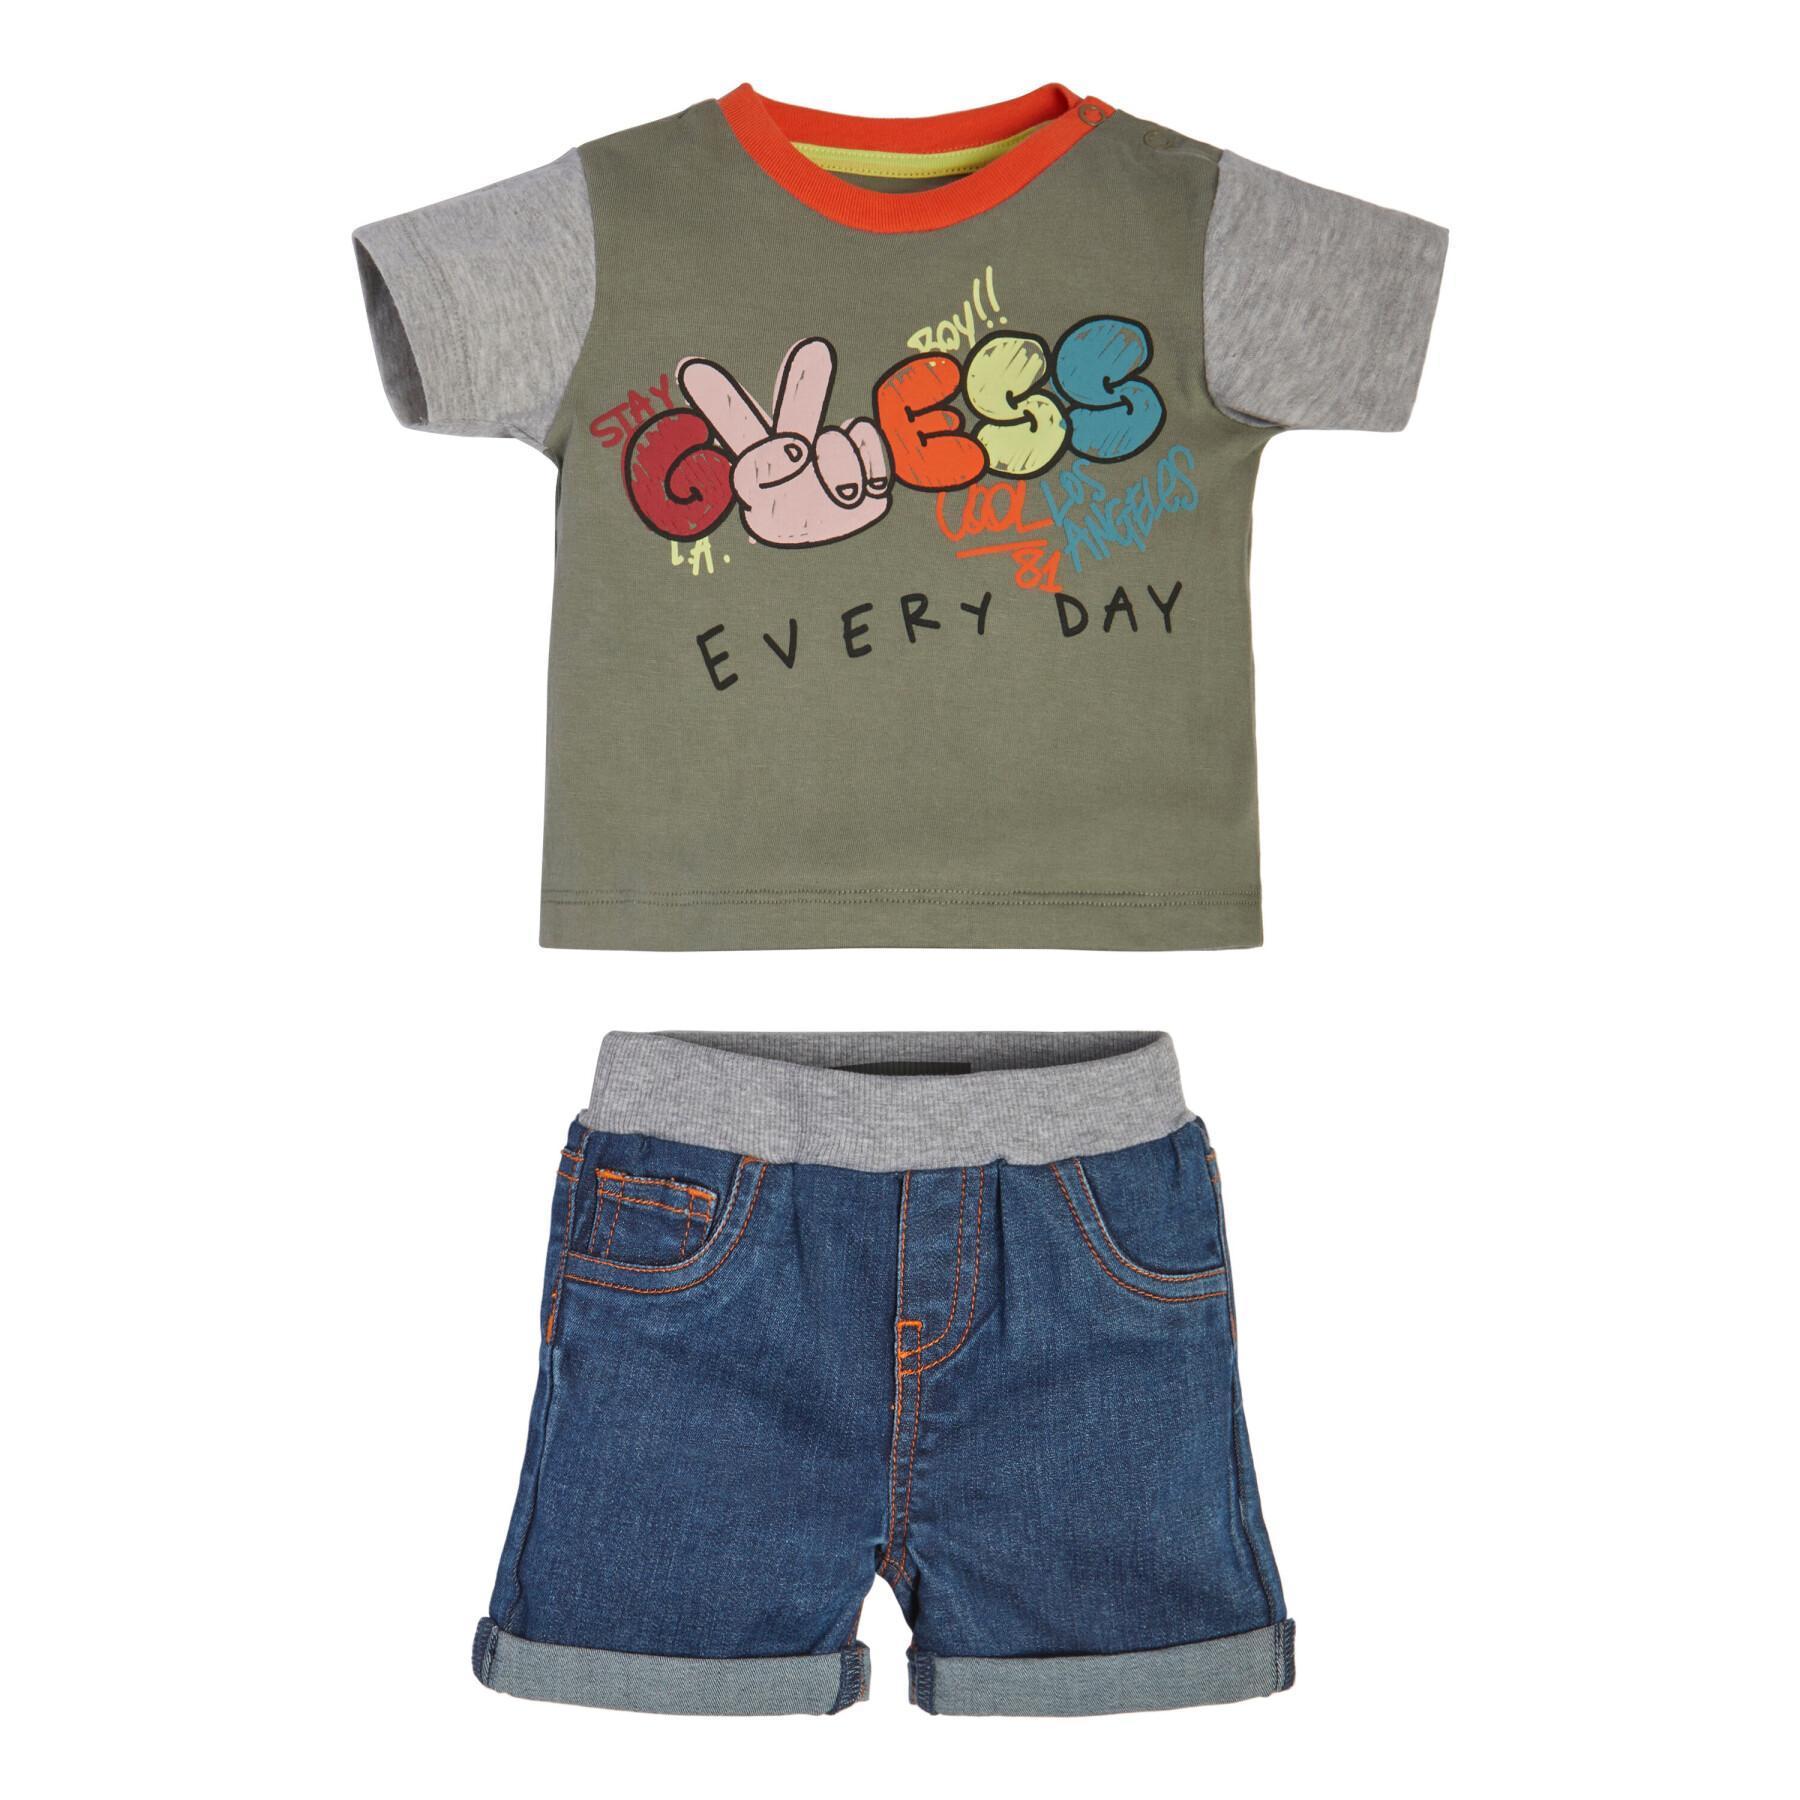 Baby jongen t-shirt + jeans shorts set Guess